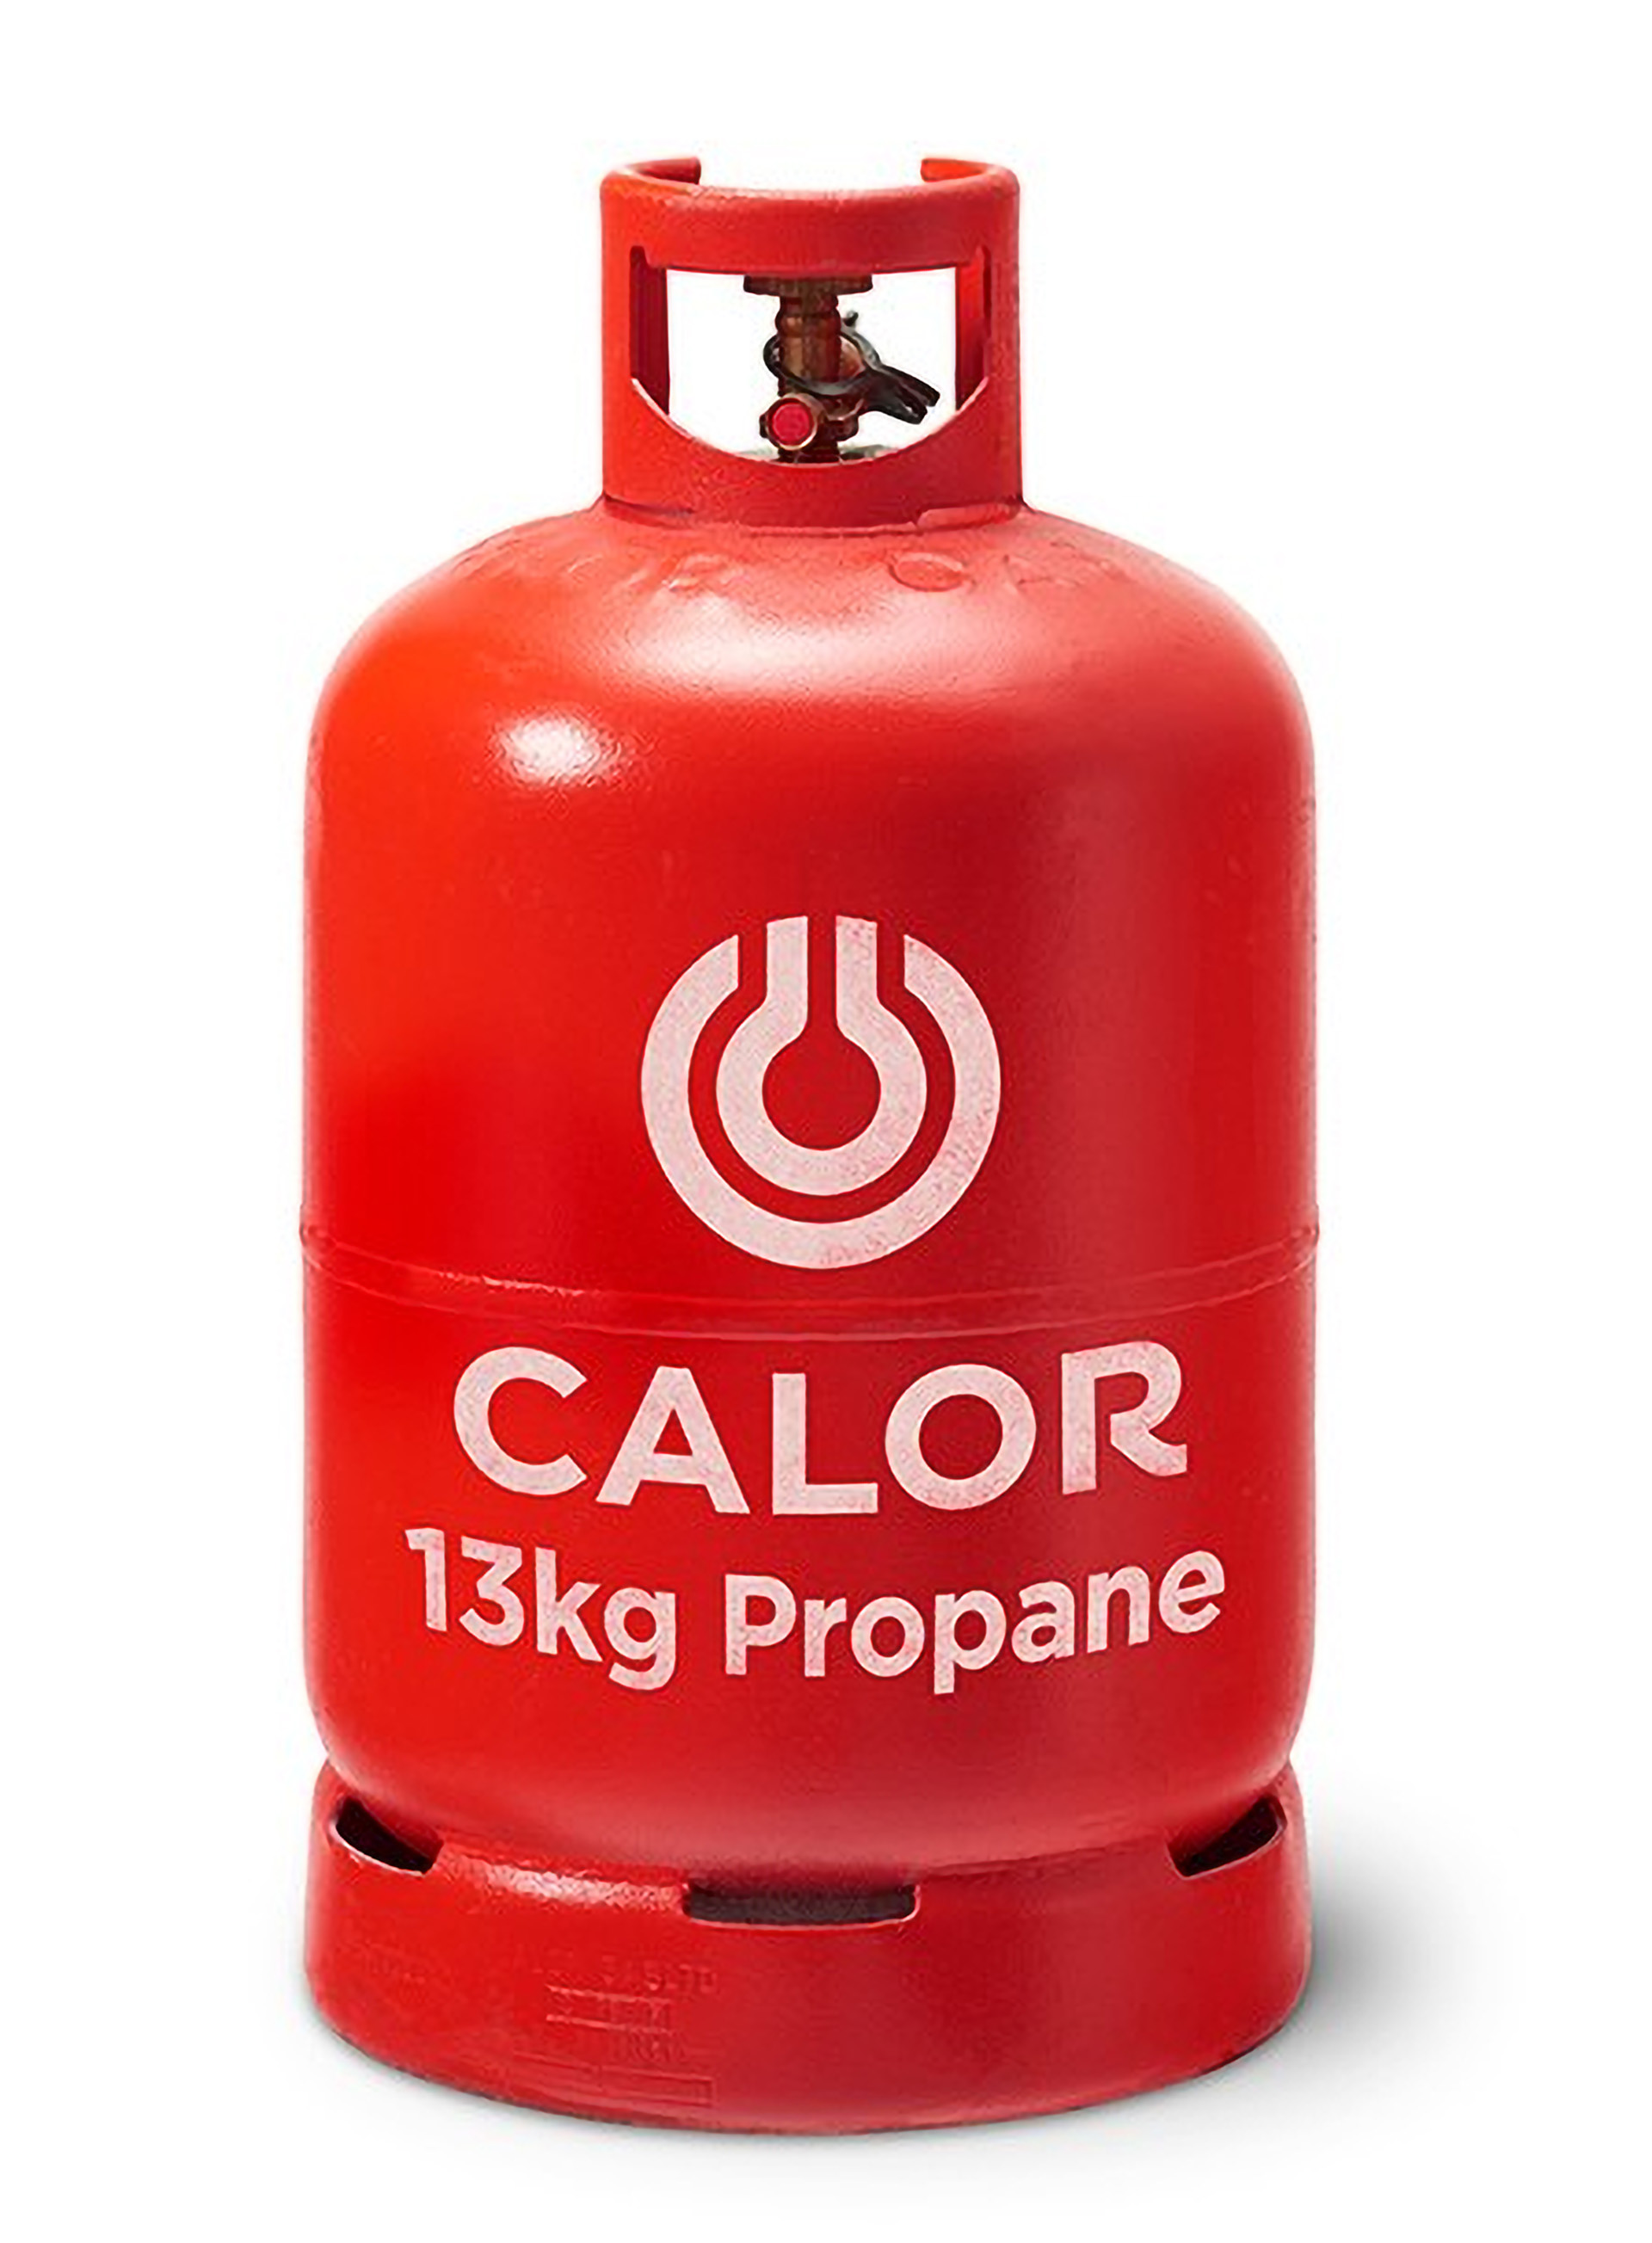 13kg propane gas bottle